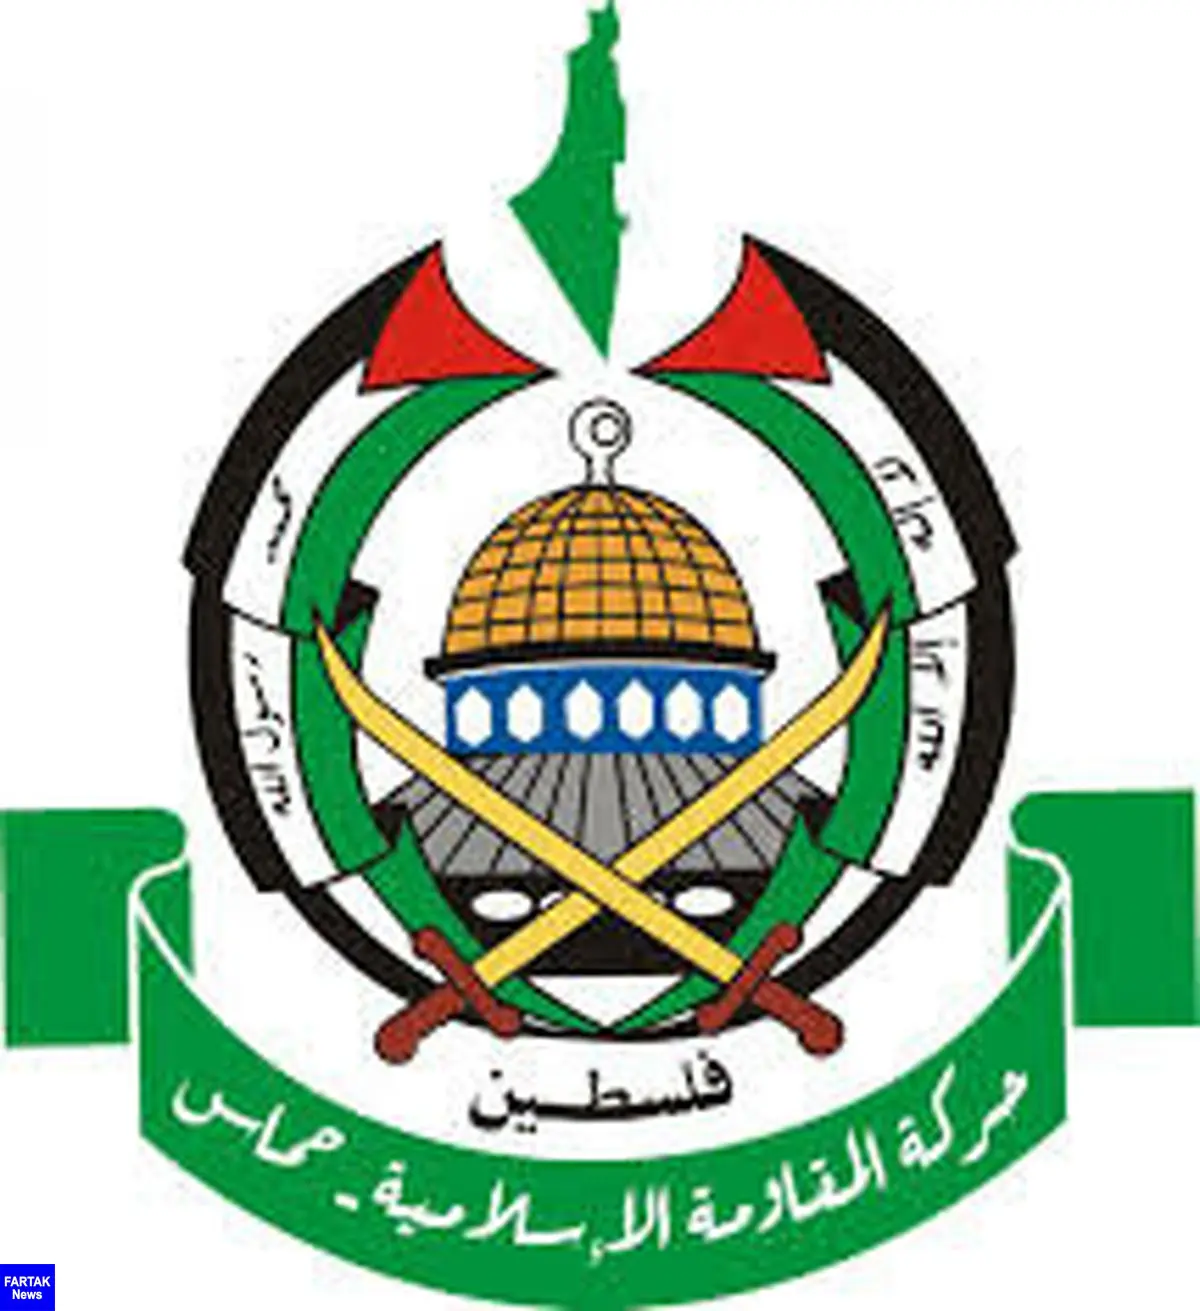 بیانیه جنبش حماس پیرامون نشست اتحادیه عرب در مورد معامله قرن